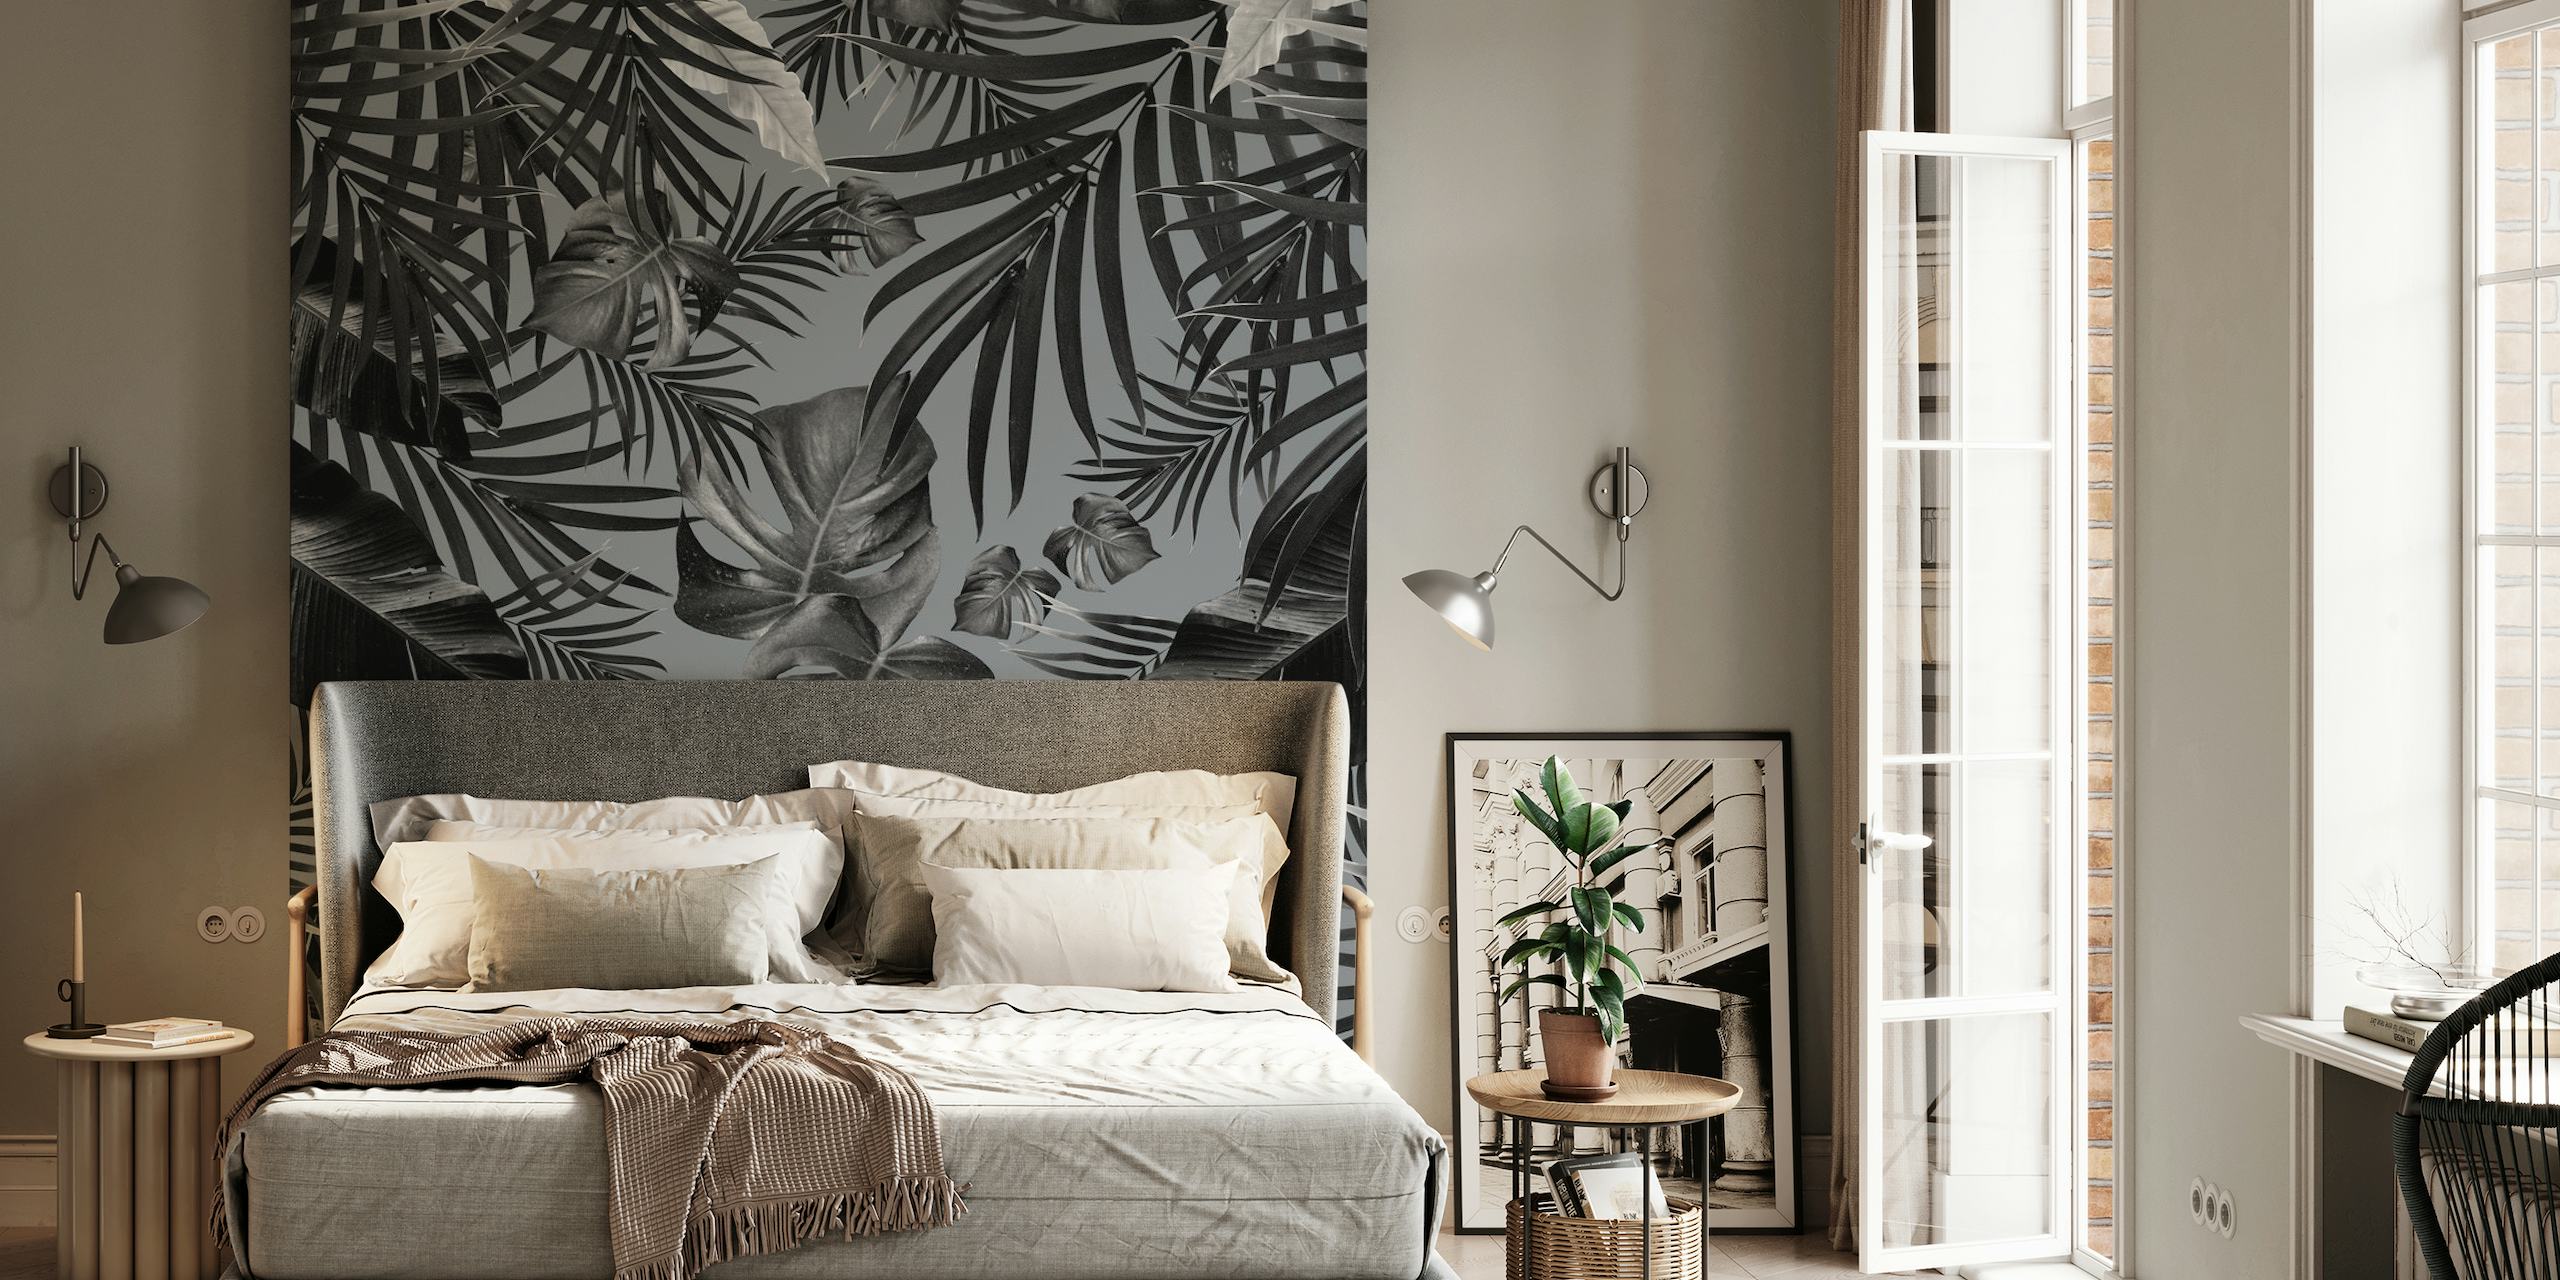 fotomural vinílico de parede monocromático com padrão de folha tropical para decoração de interiores